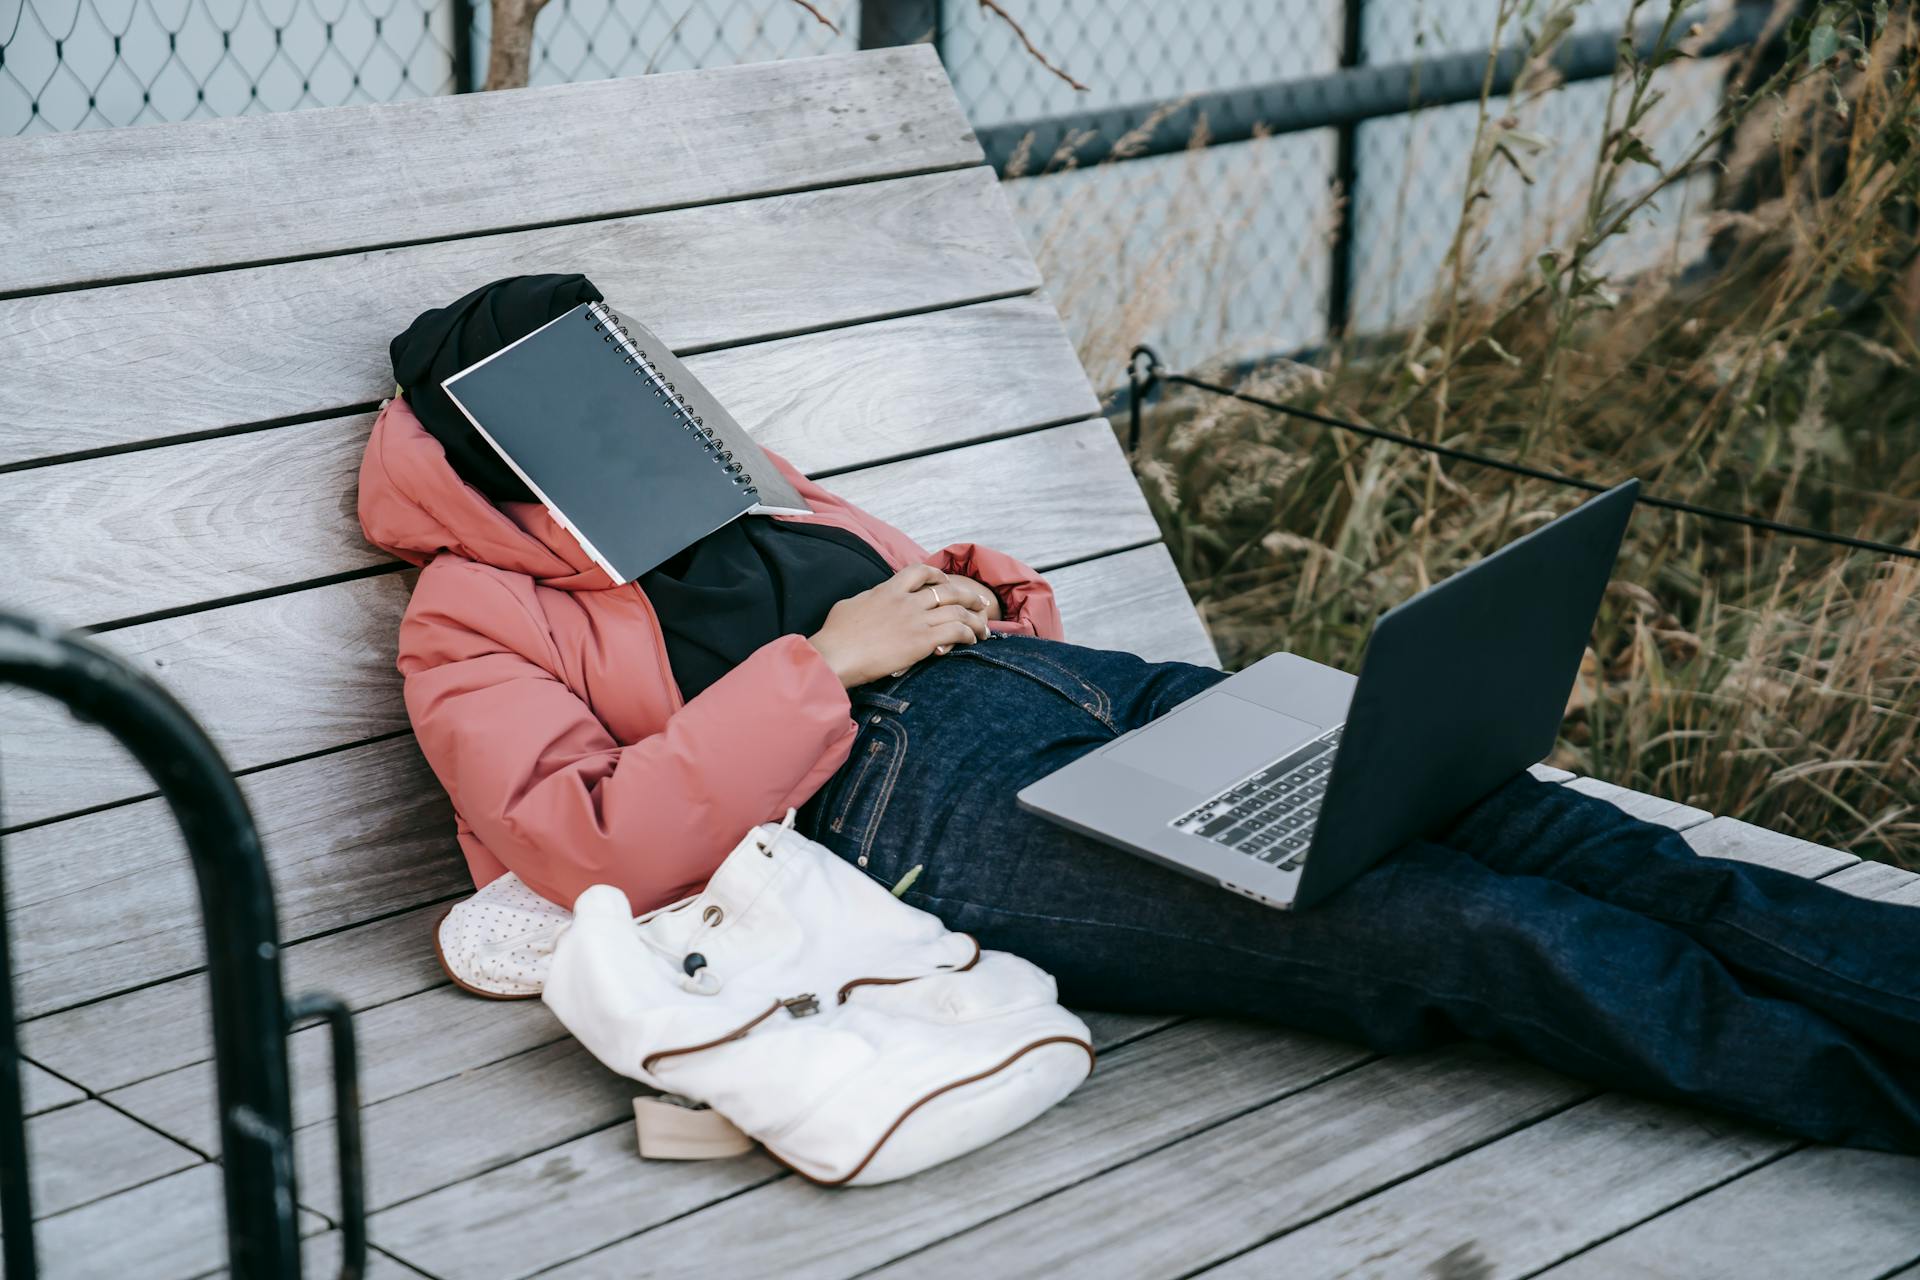 Une femme méconnaissable avec un ordinateur portable ouvert reposant sur un banc avec un livre sur le visage | Source : Pexels